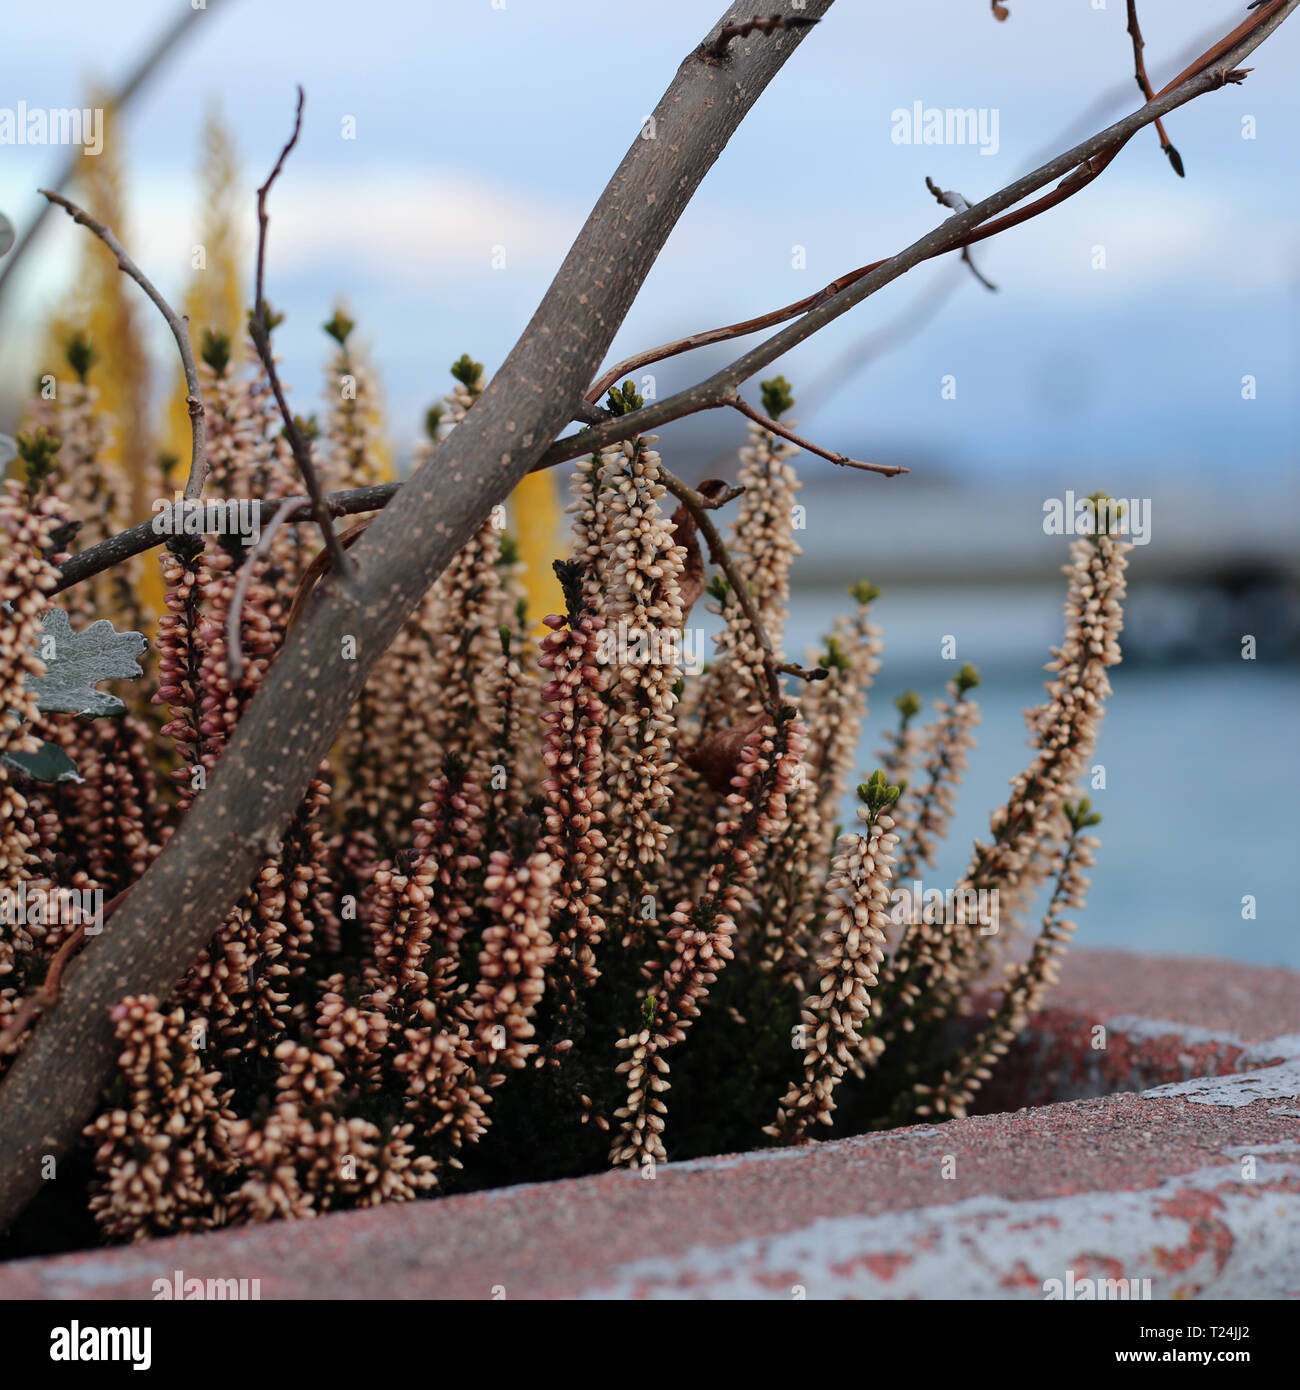 Bei fiori gialli ed il tronco di un piccolo albero fotografato appena prima che Sun ha iniziato a impostare in Nyon, Svizzera. Immagine a colori. Foto Stock